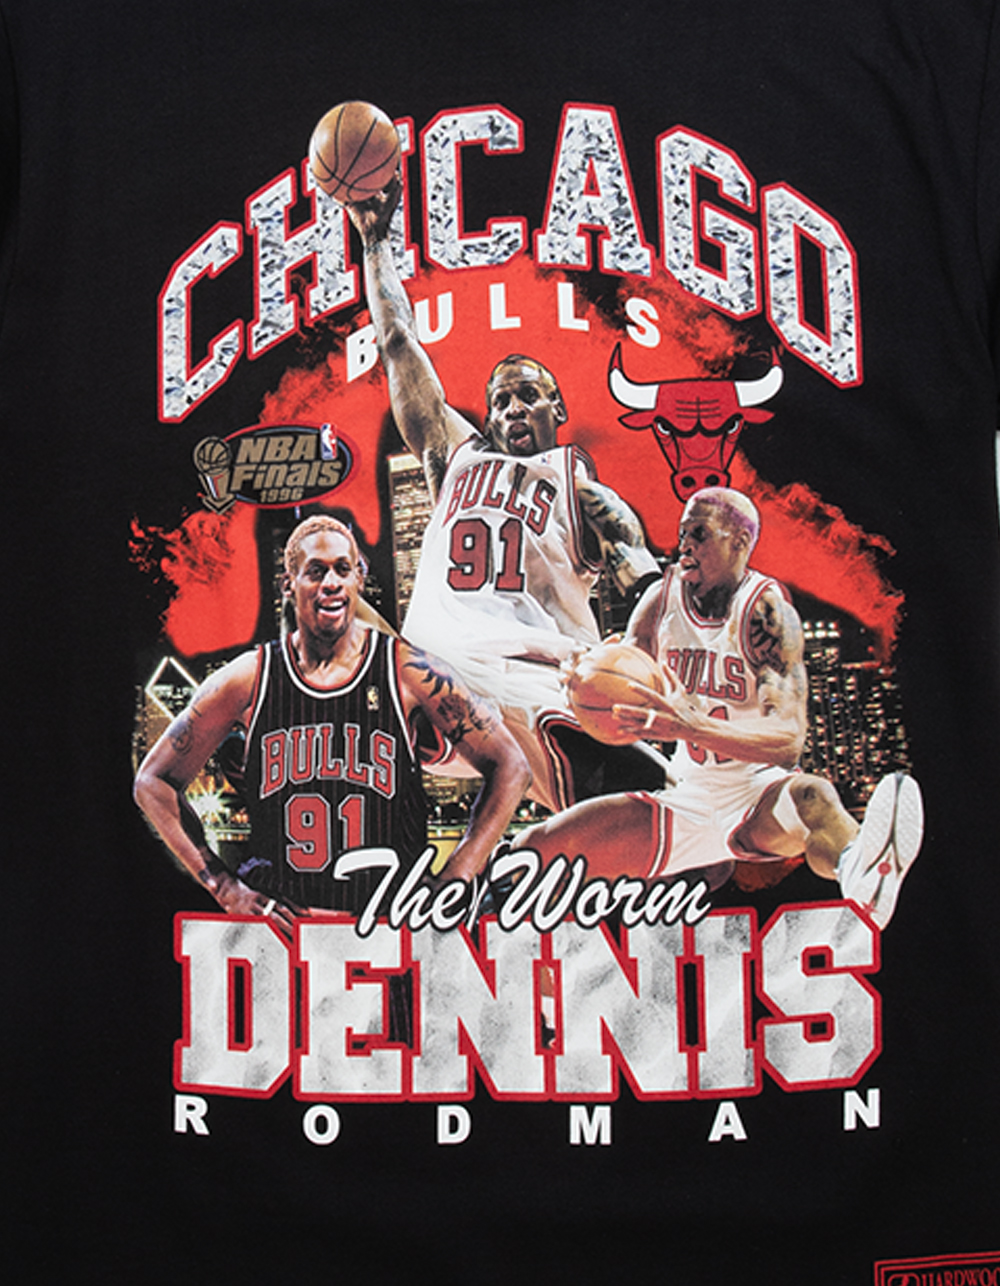 Dennis Rodman Pink NBA Chicago Bulls Nike Tee T Shirt Size M Made In USA  Vintage